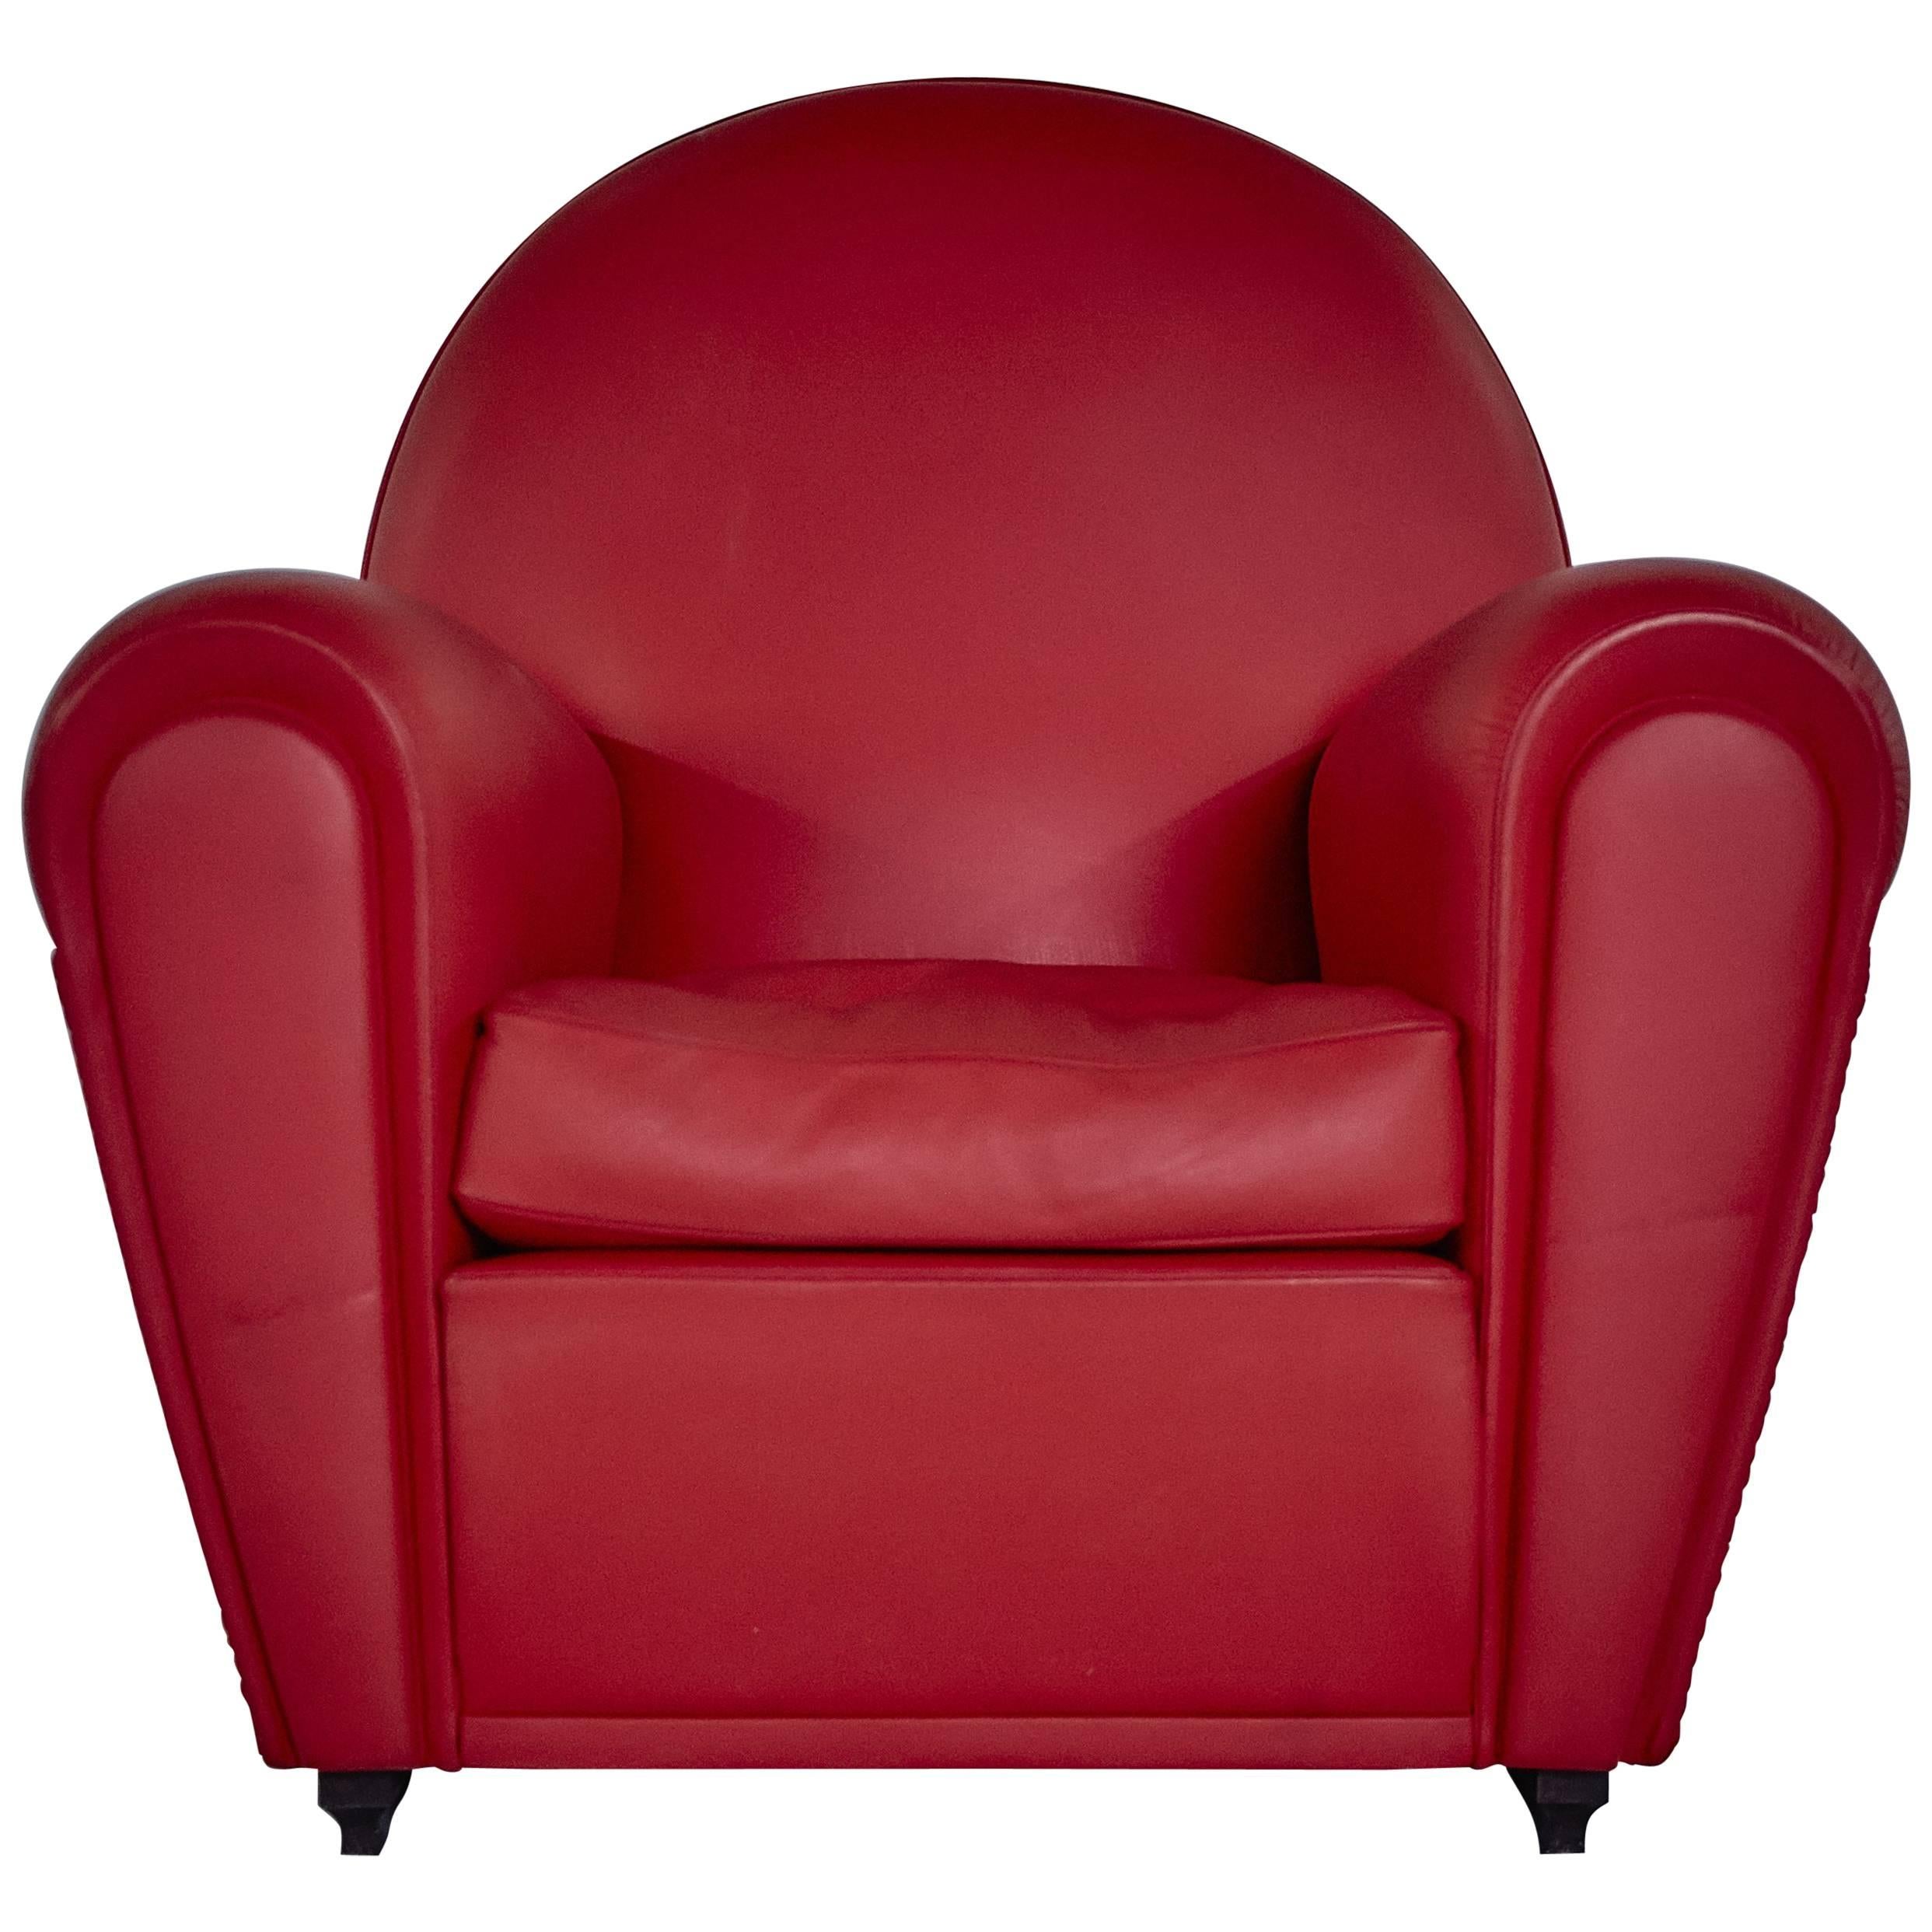 Renzo Frau Art Deco Style Red Leather Italian Fair Armchair, 1990s For Sale